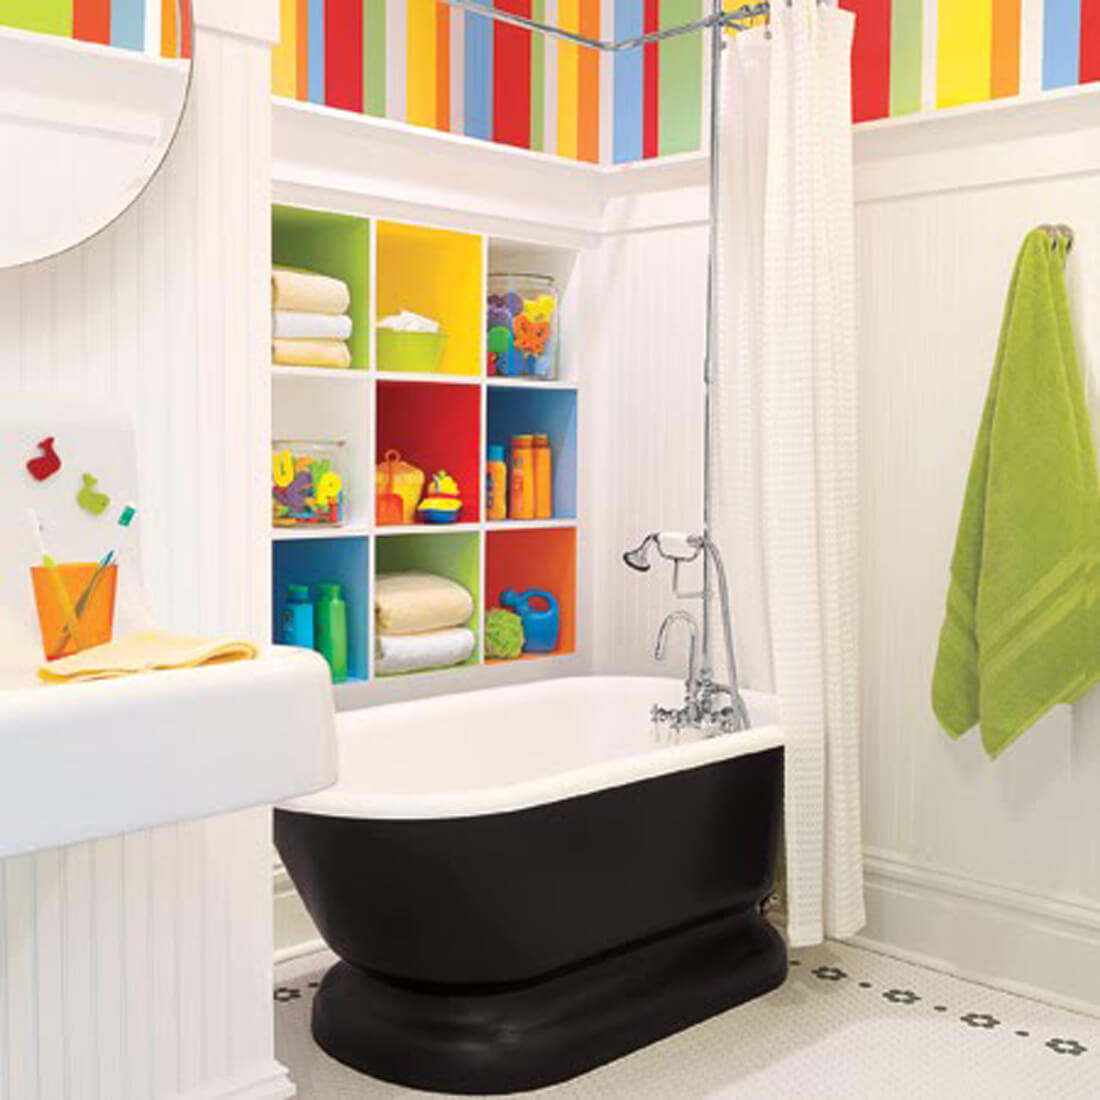 Color Bomb Bathroom | Kids Bathroom Décor Tips: Decorating Ideas for a Child’s Bathroom